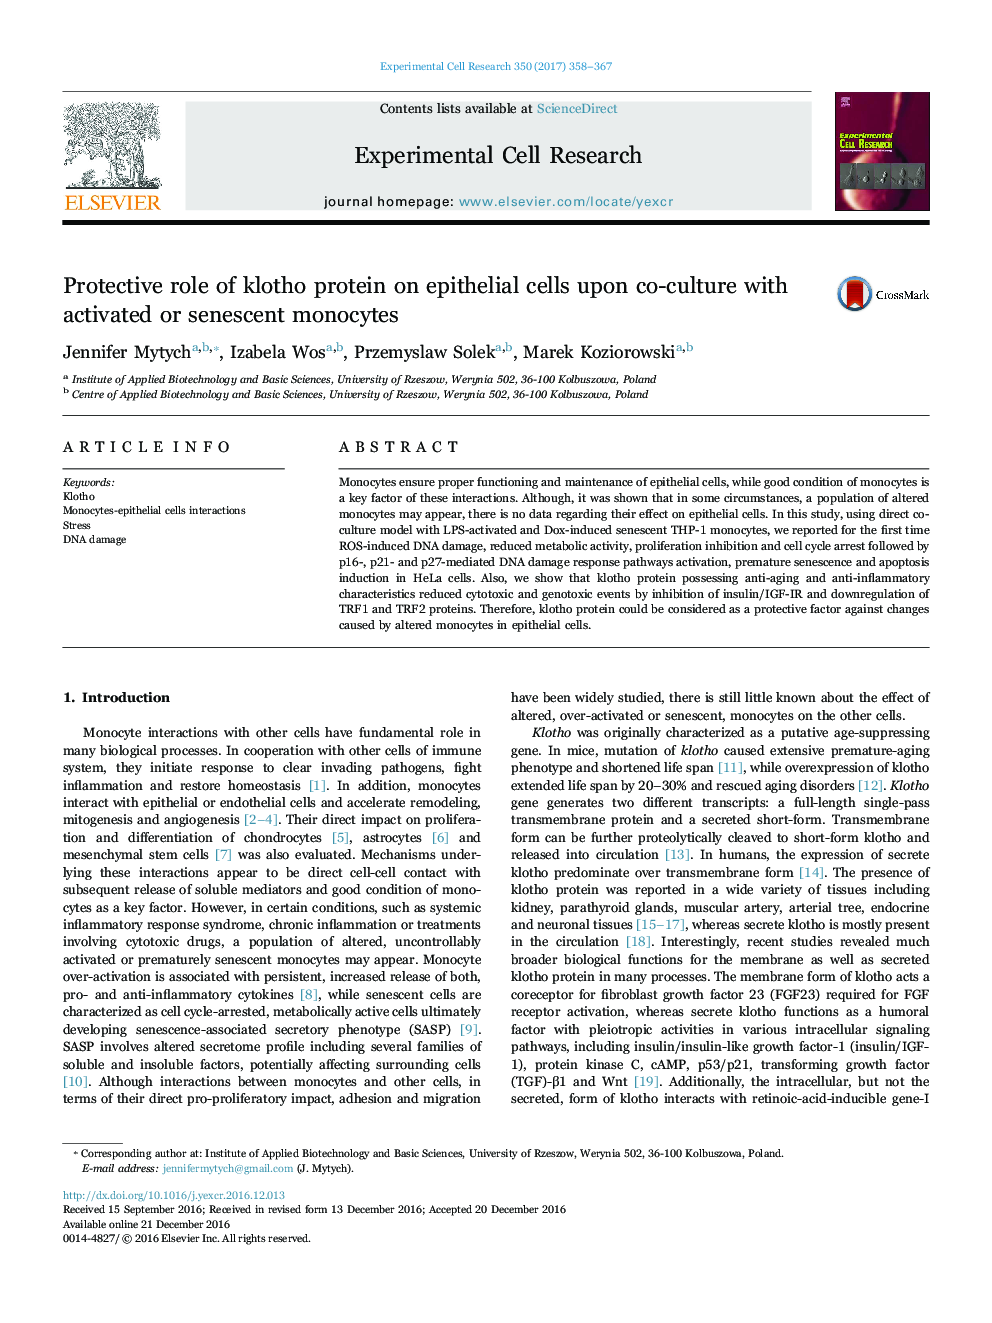 نقش محافظتی پروتئین کلوتو بر روی سلولهای اپیتلیال بر روی همکاری با مونوسیت های فعال یا پیری 